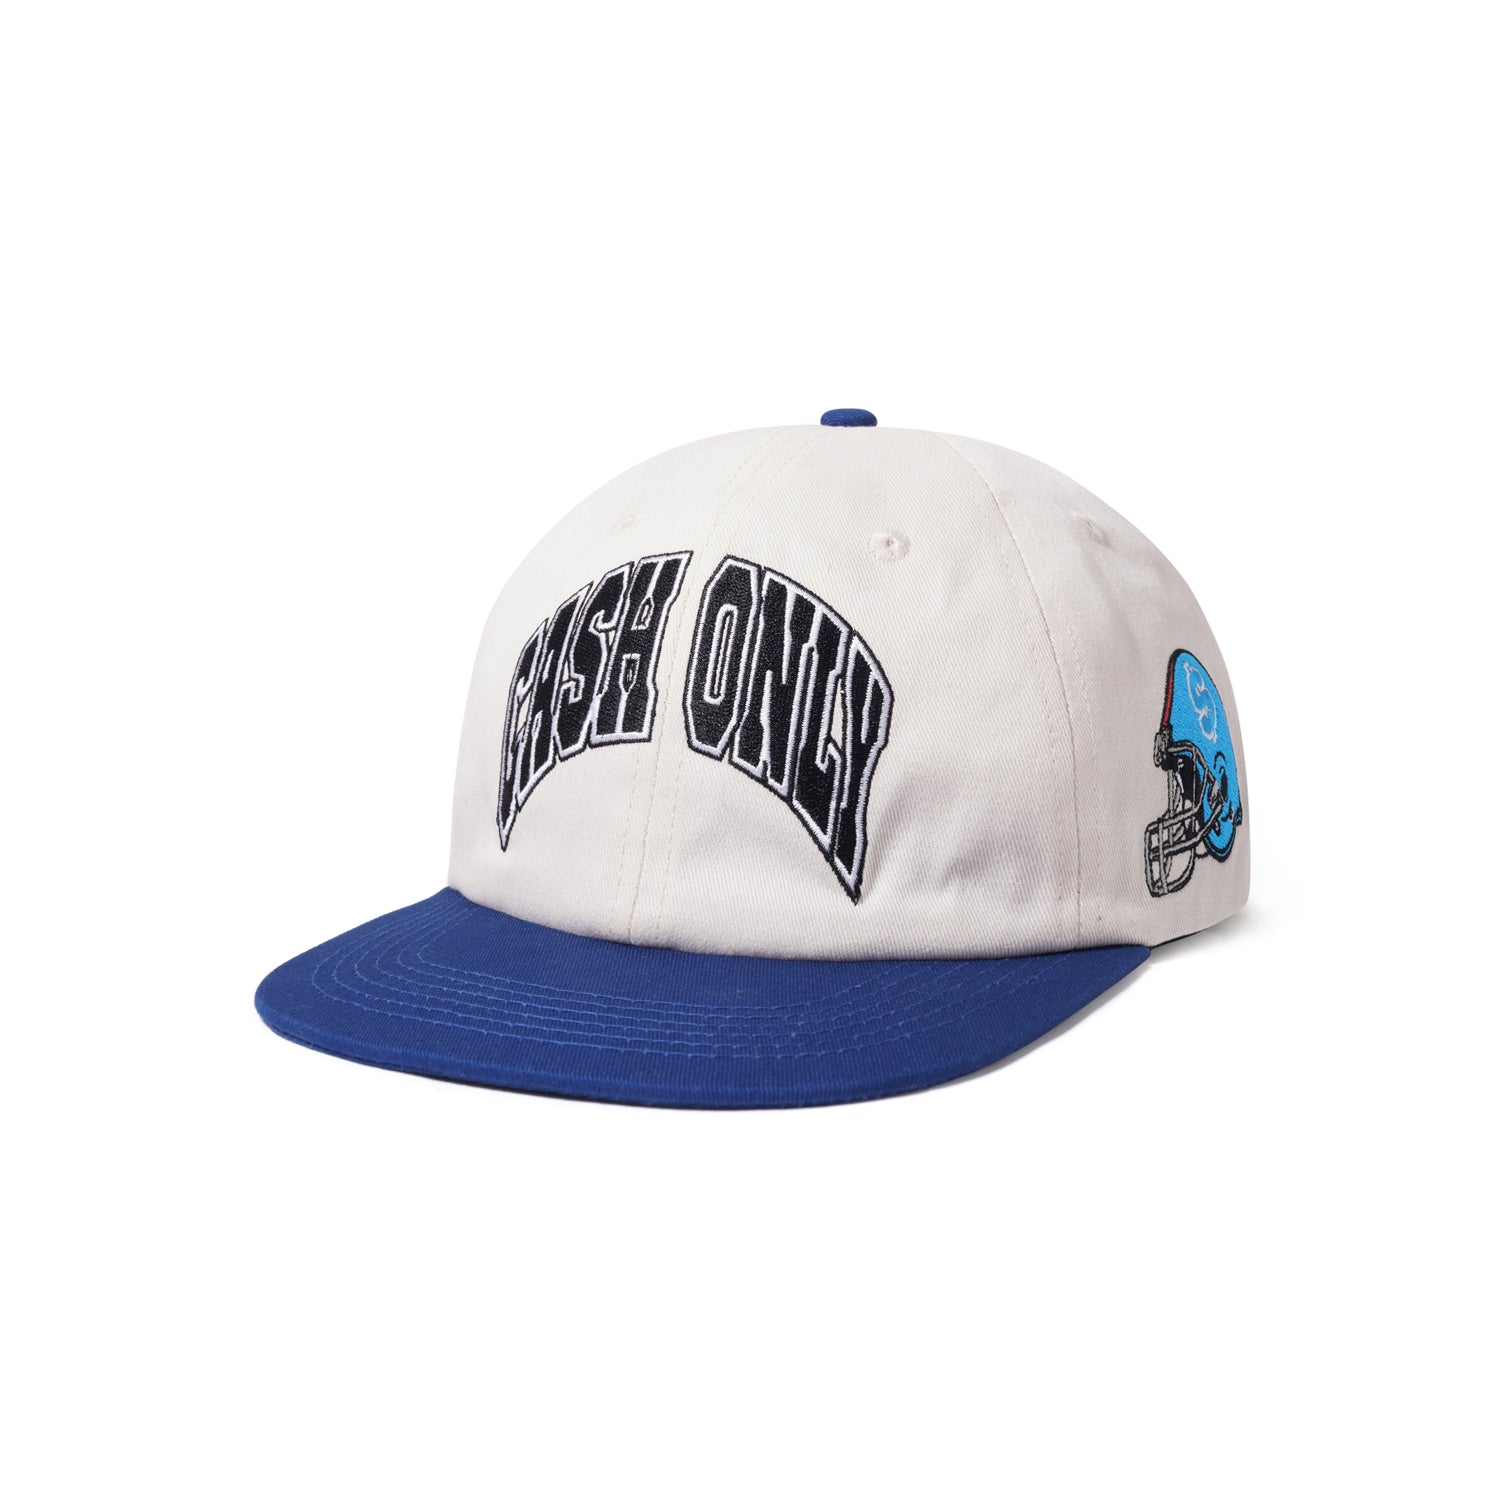 Super Bowl Snapback Cap, Cream / Royal Blue